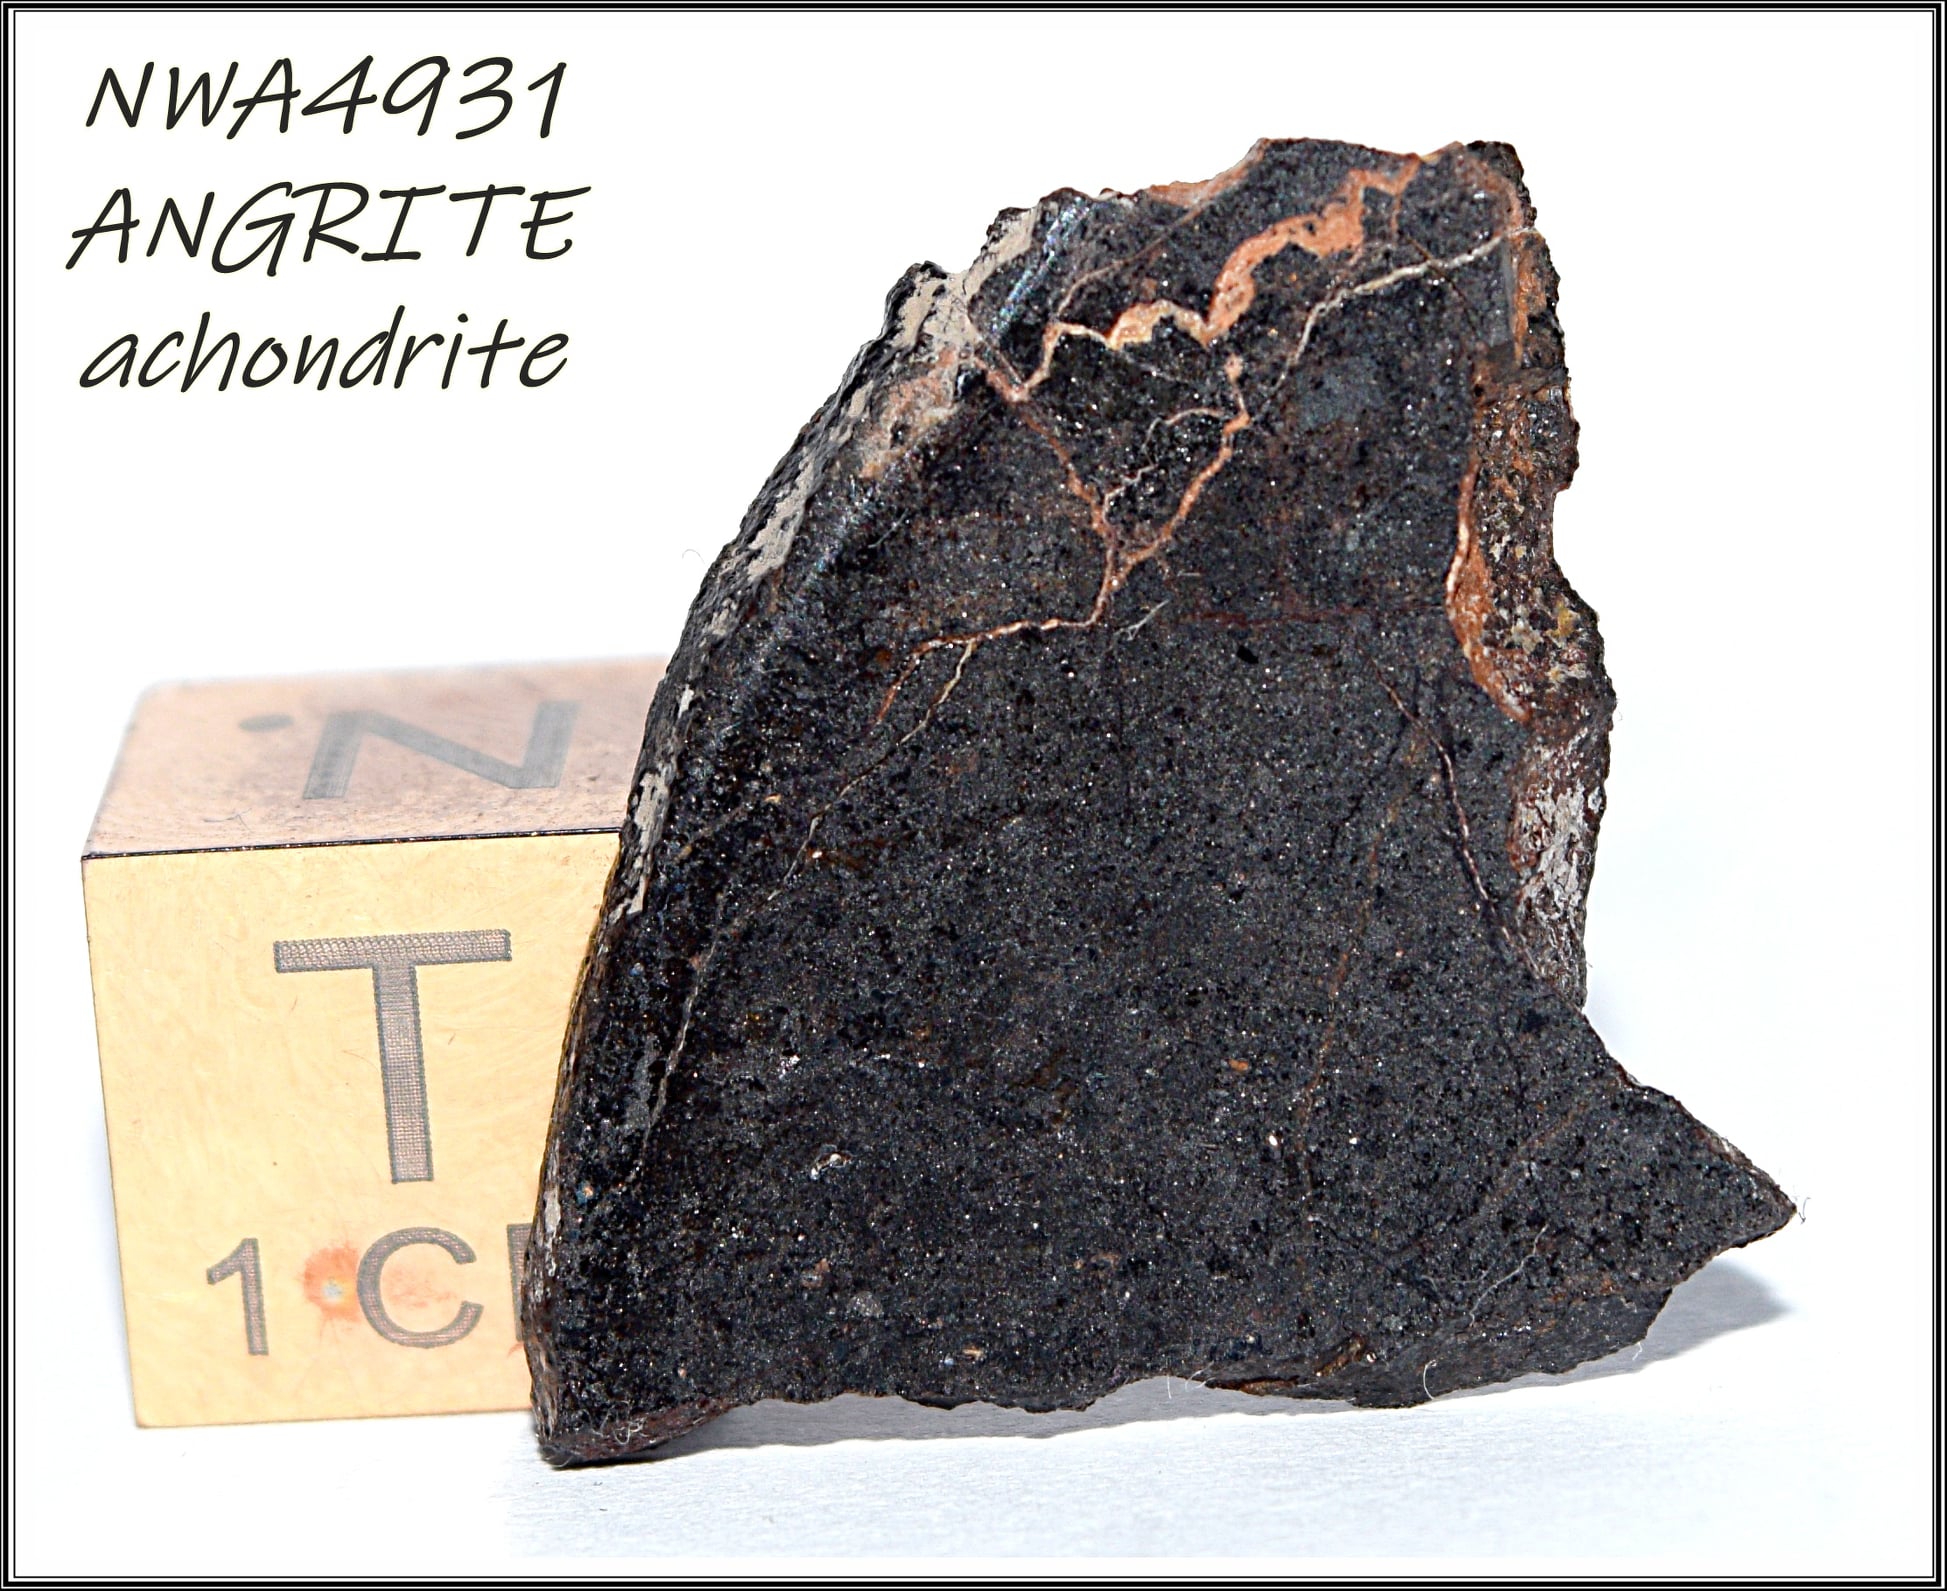 Egy unikális meteorittípus – az angrit